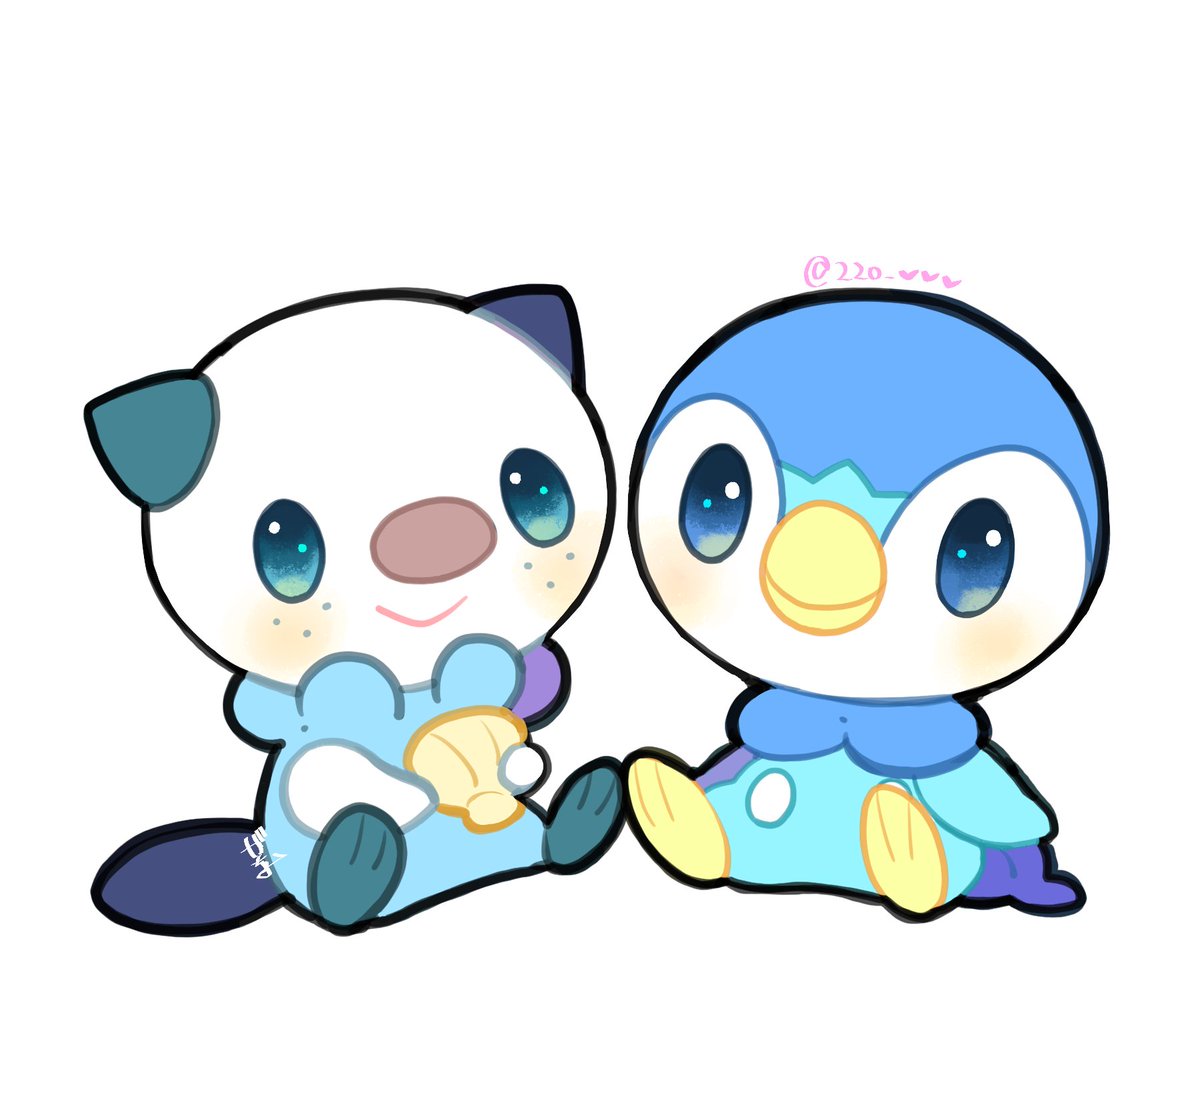 oshawott ,piplup no humans pokemon (creature) blue eyes smile sitting closed mouth white background  illustration images